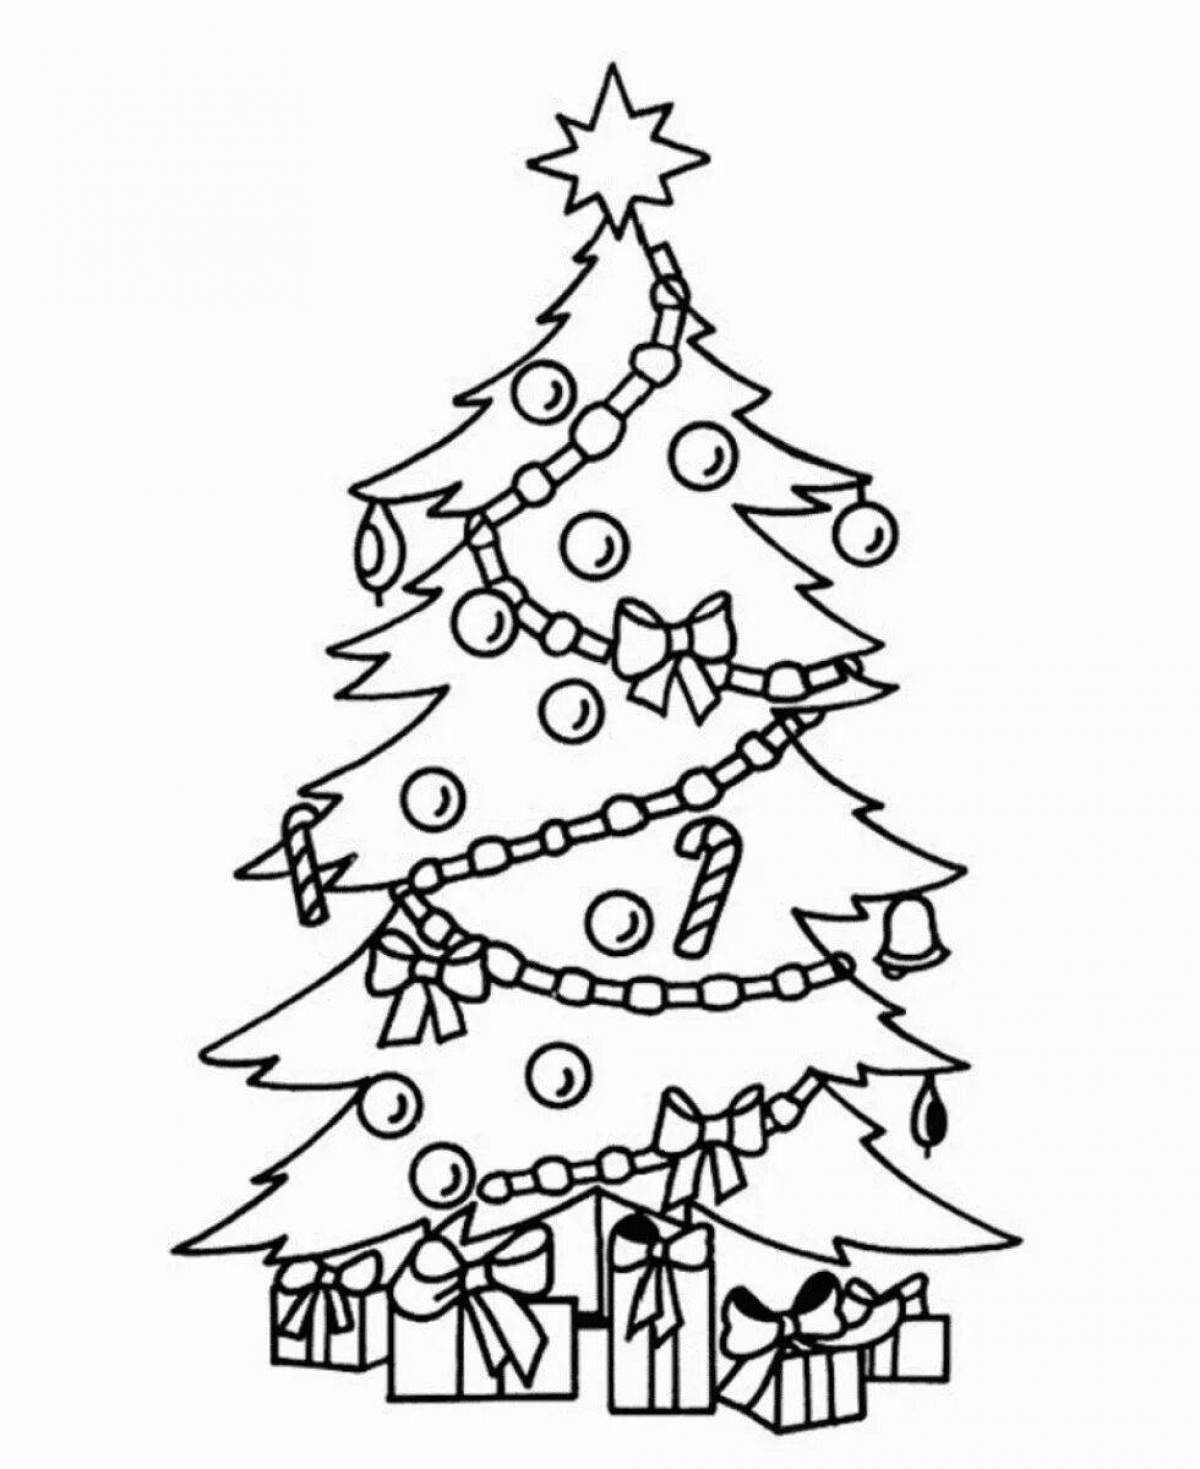 Christmas tree drawing #2